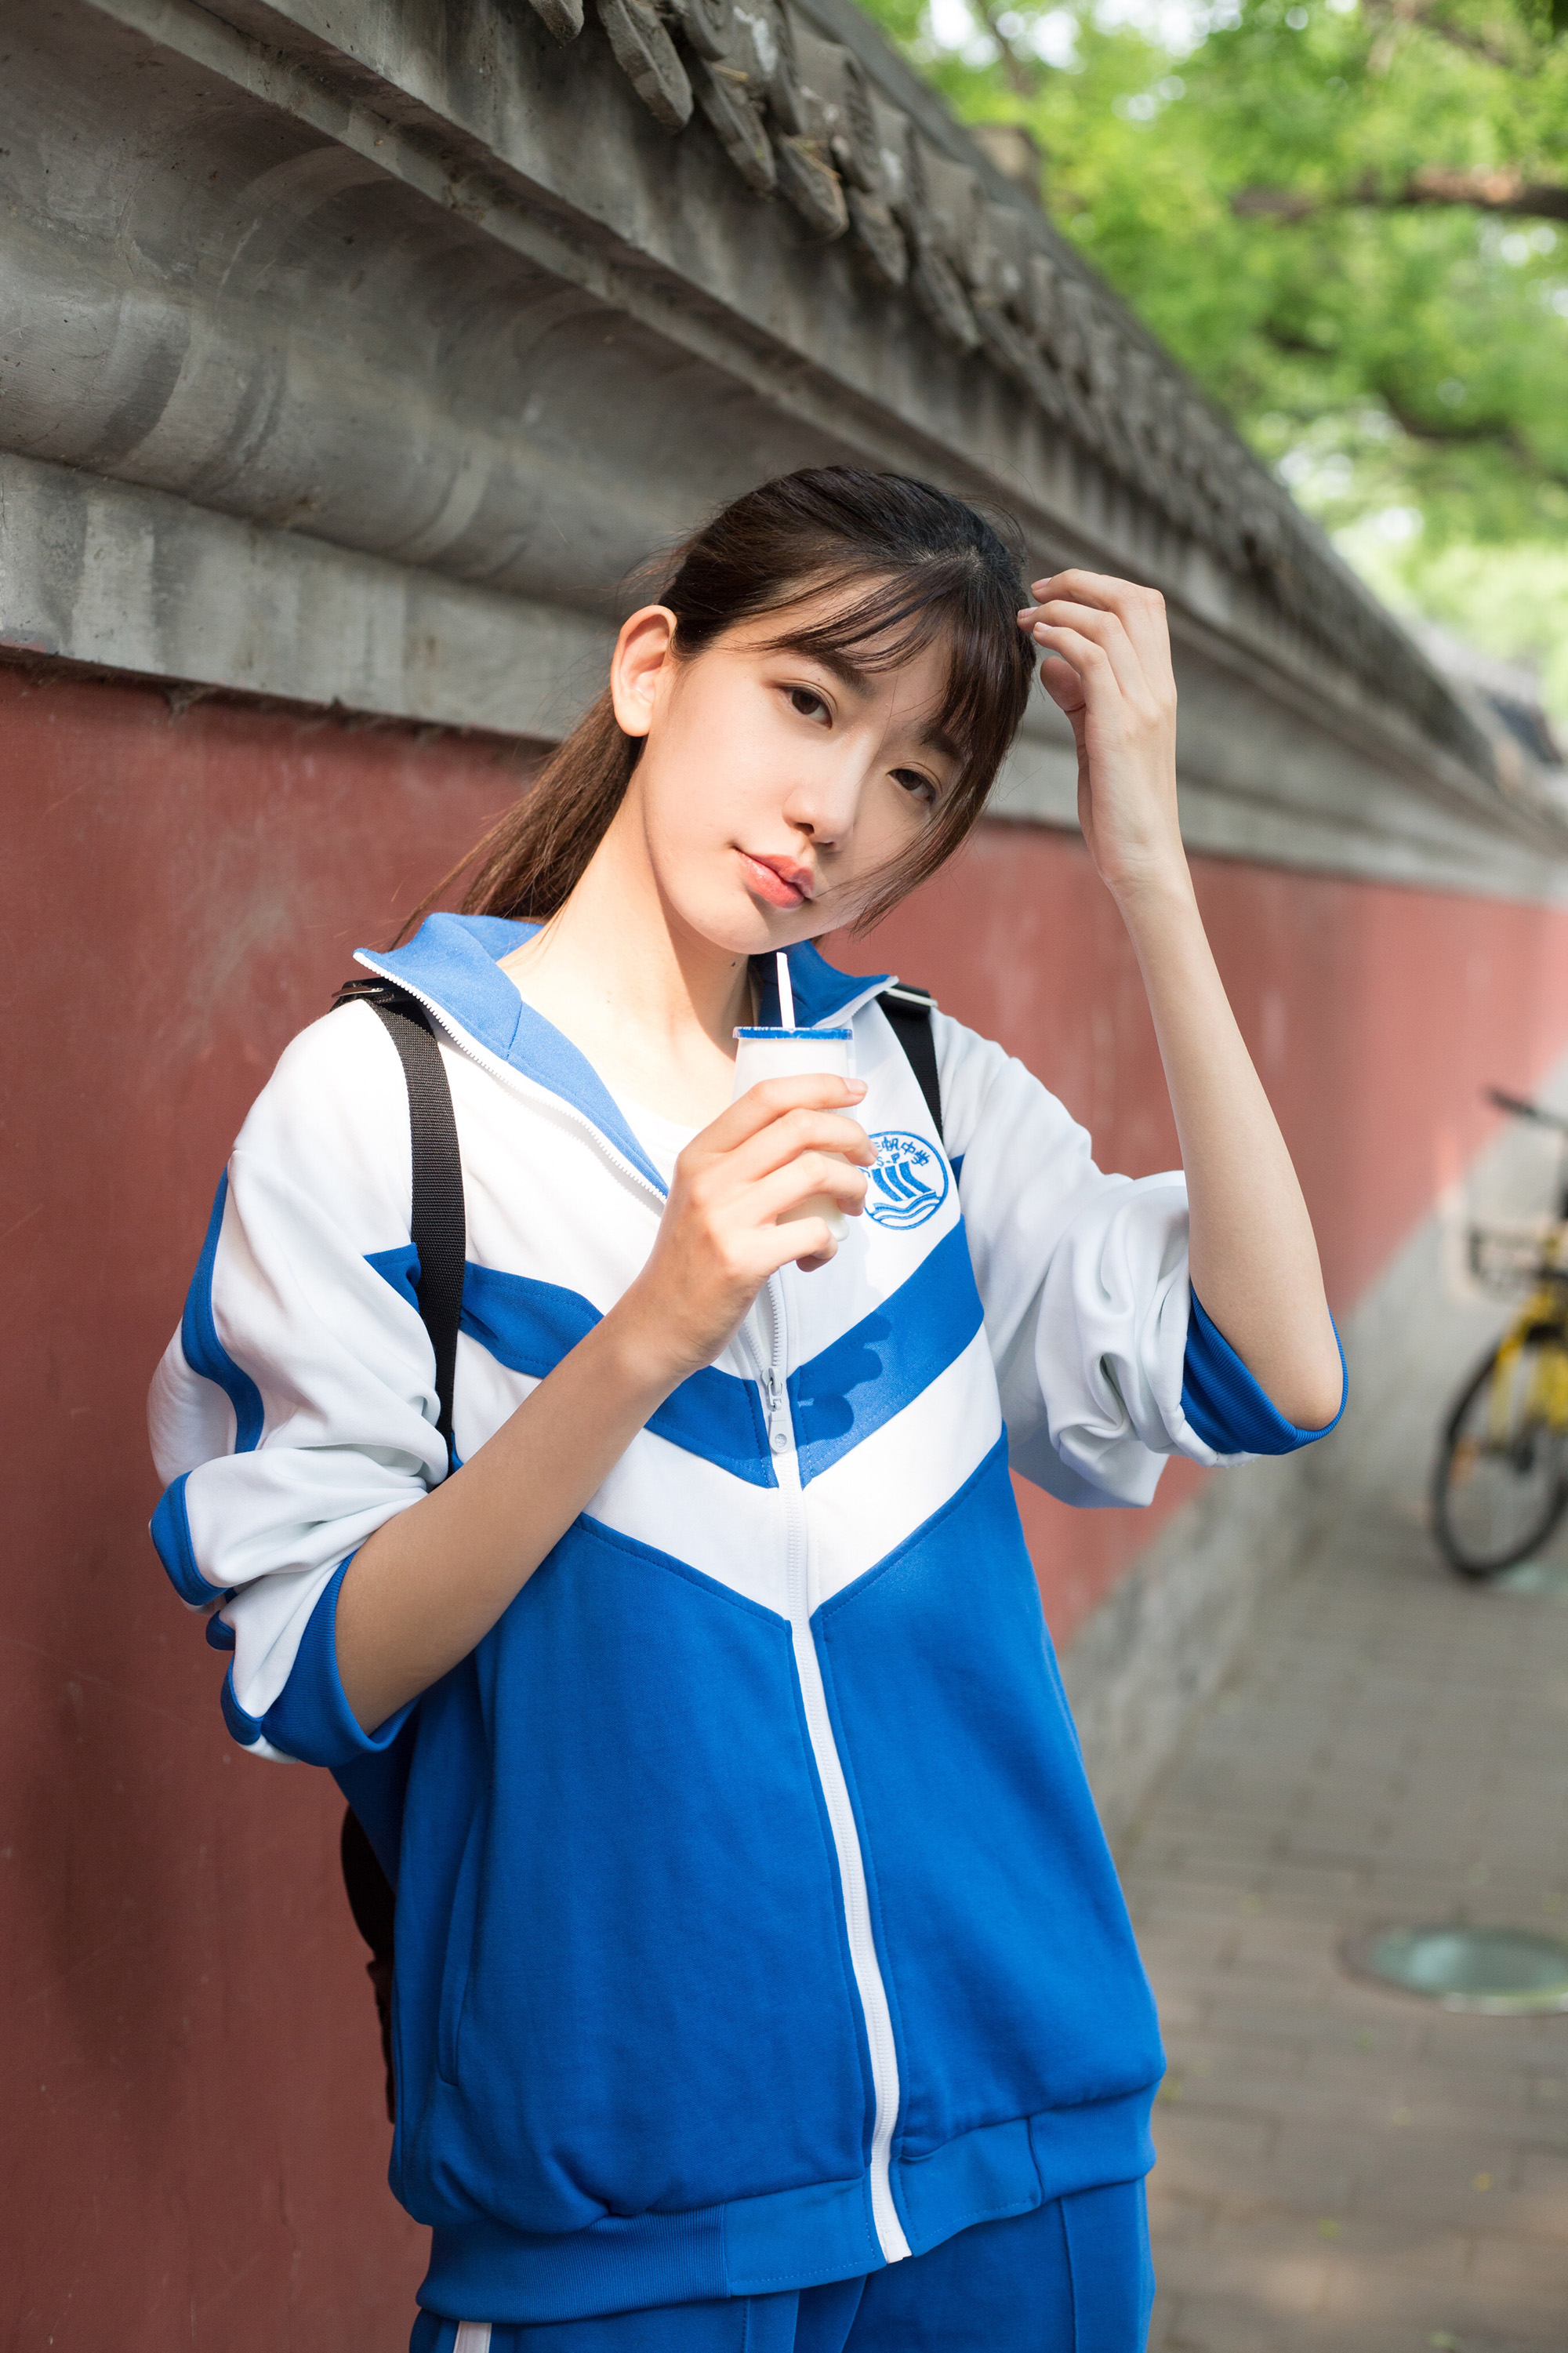 中国最美校服女子图片